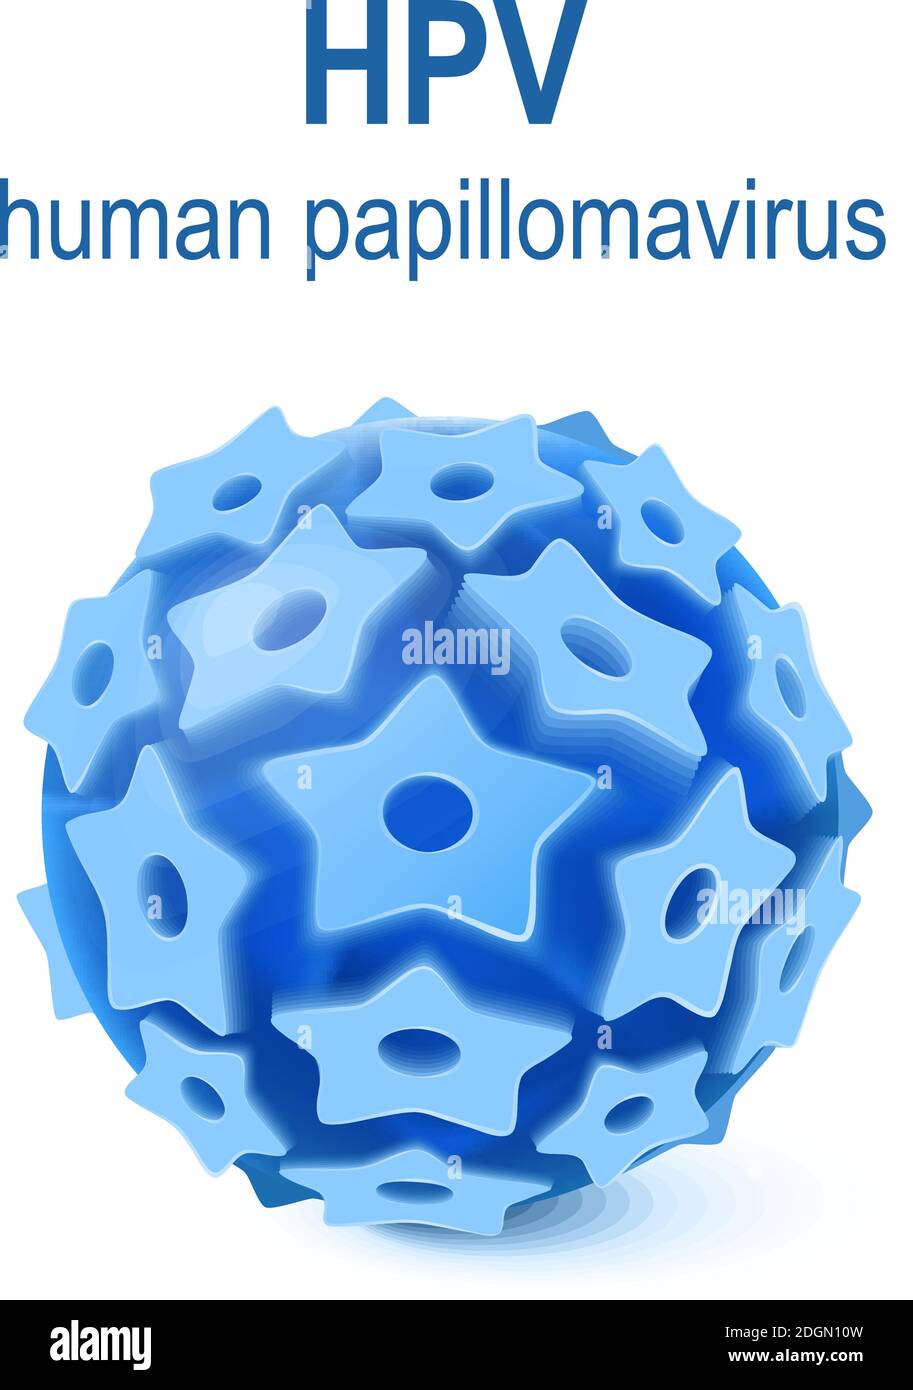 hpv - infection par le papillomavirus humain. Le VPH est un virus qui cause des verrues et le cancer du col de l'utérus Illustration de Vecteur